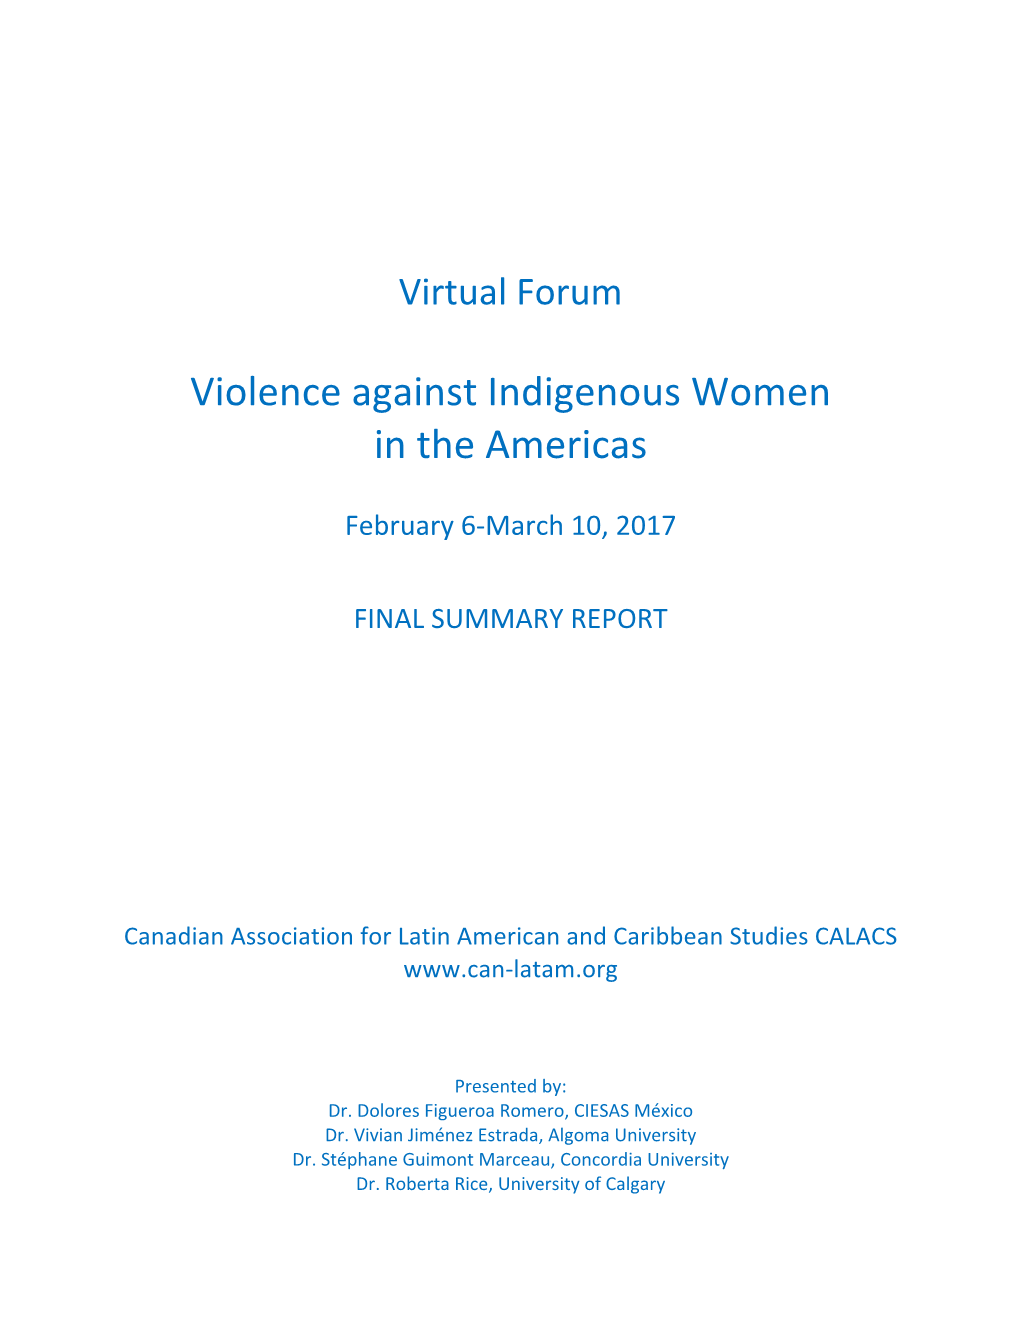 CALACS Virtual Forum Violence Against Indigenous Women